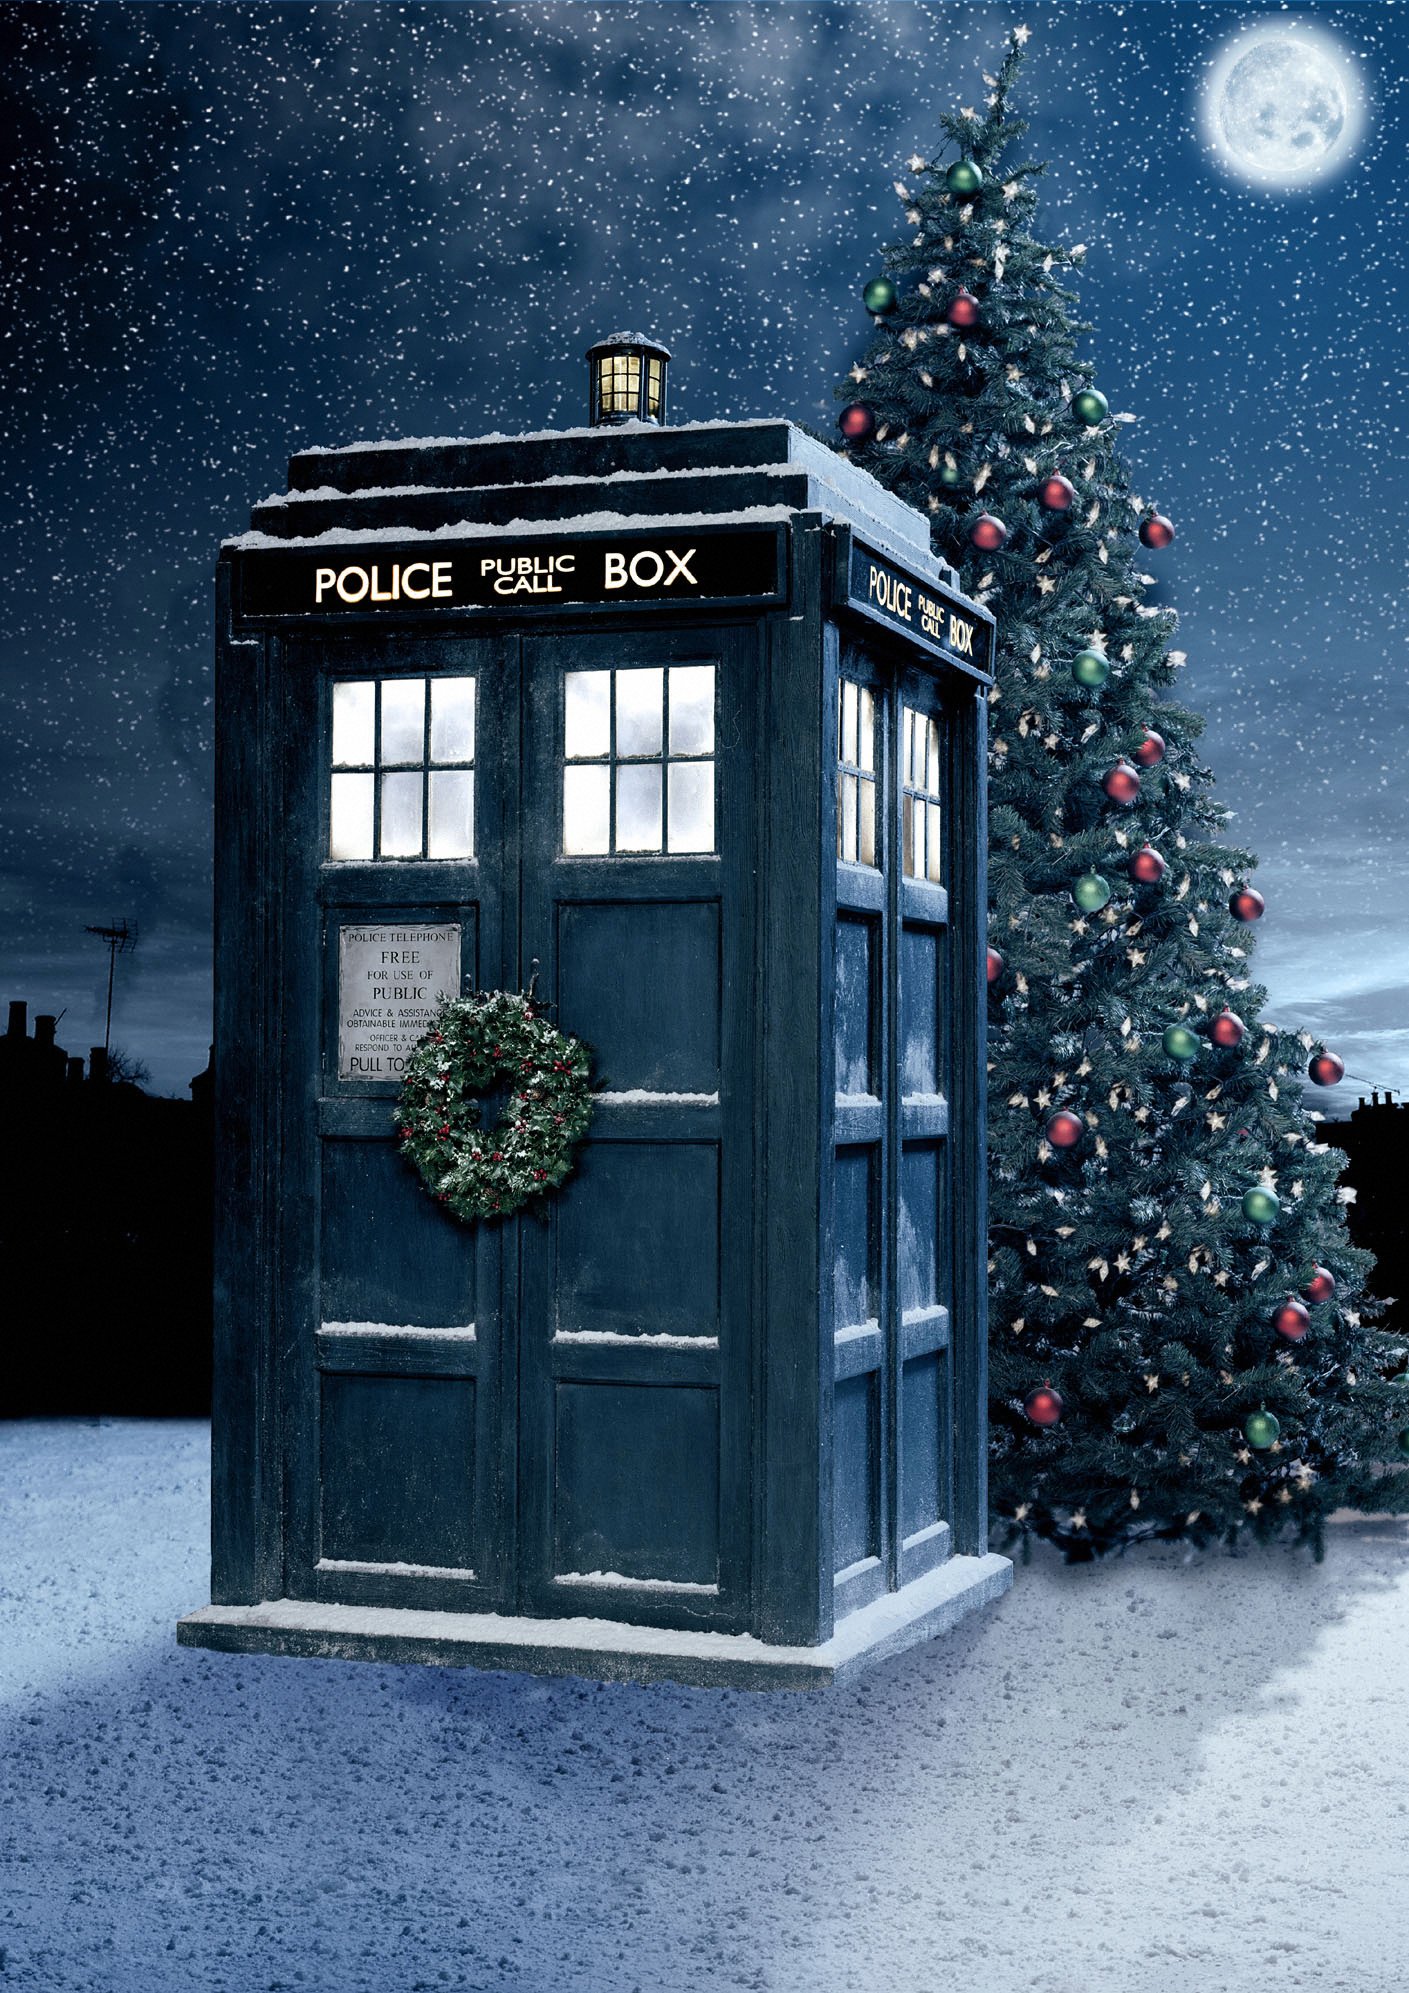 doctor who last christmas kiss